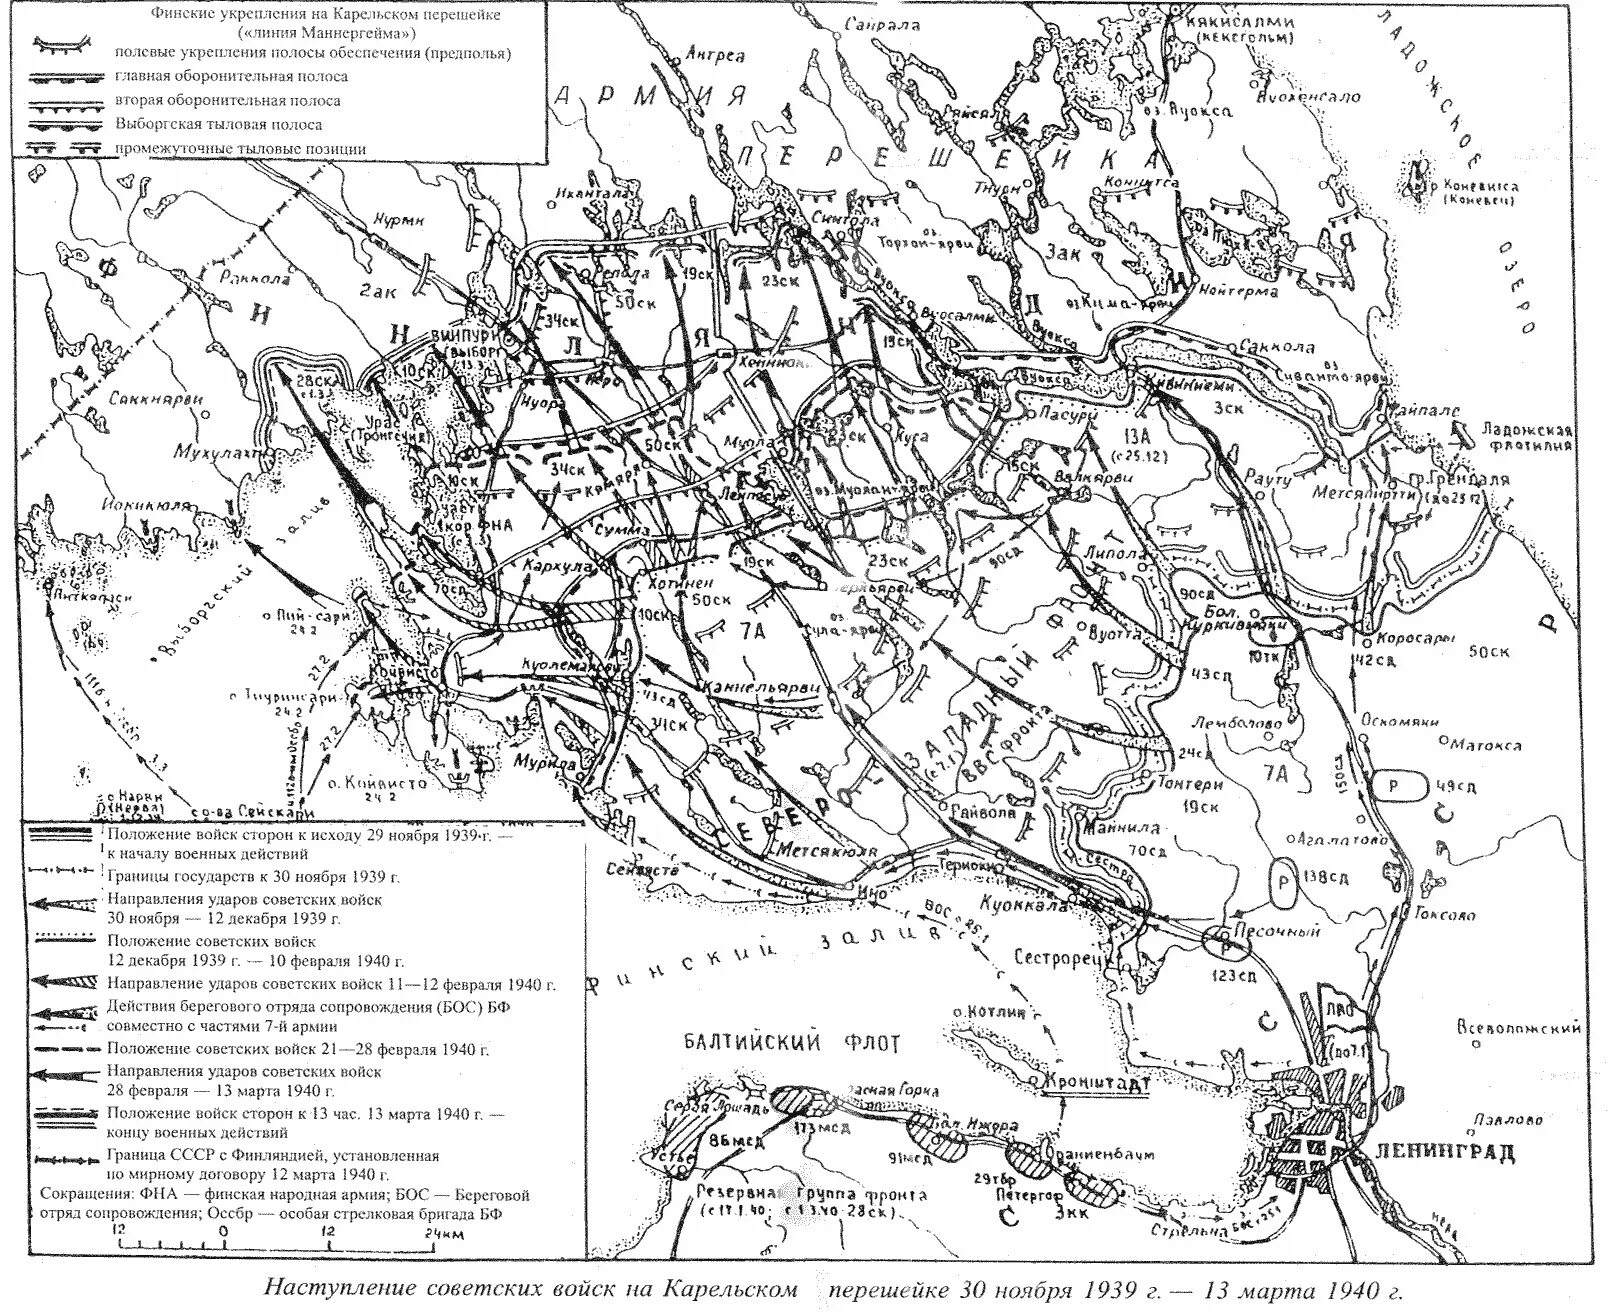 Финляндия прекратила военные действия против ссср. Карельский перешеек на карте 1939 года.